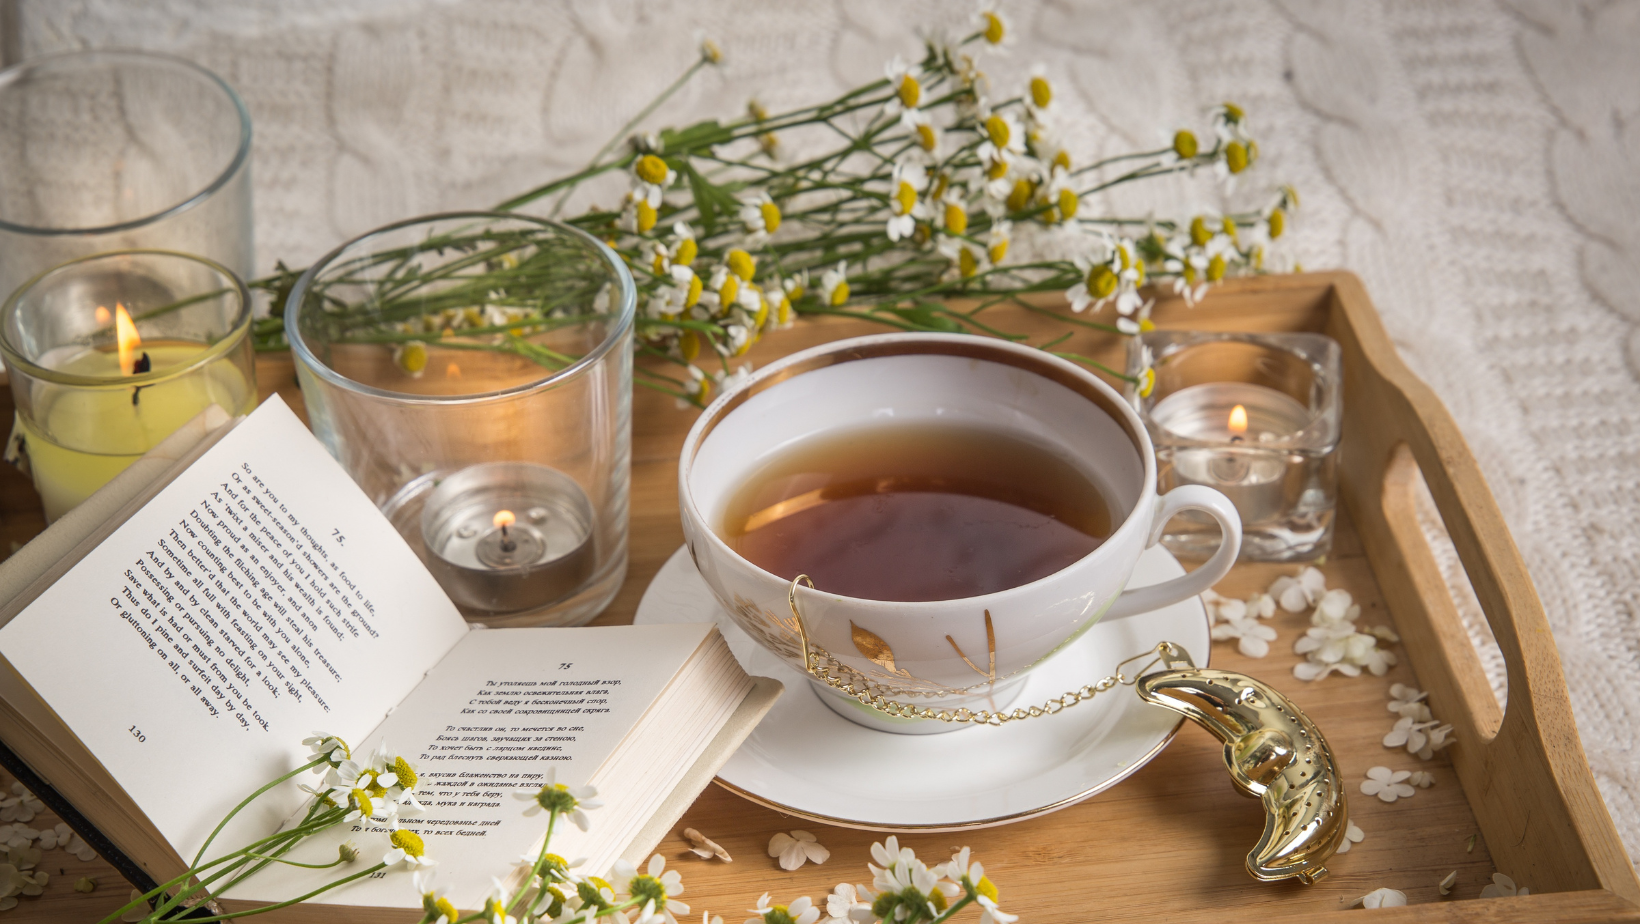 Khám phá trà hoa cúc túi lọc - 1 một trải nghiệm tinh tế cho giác quan - 5